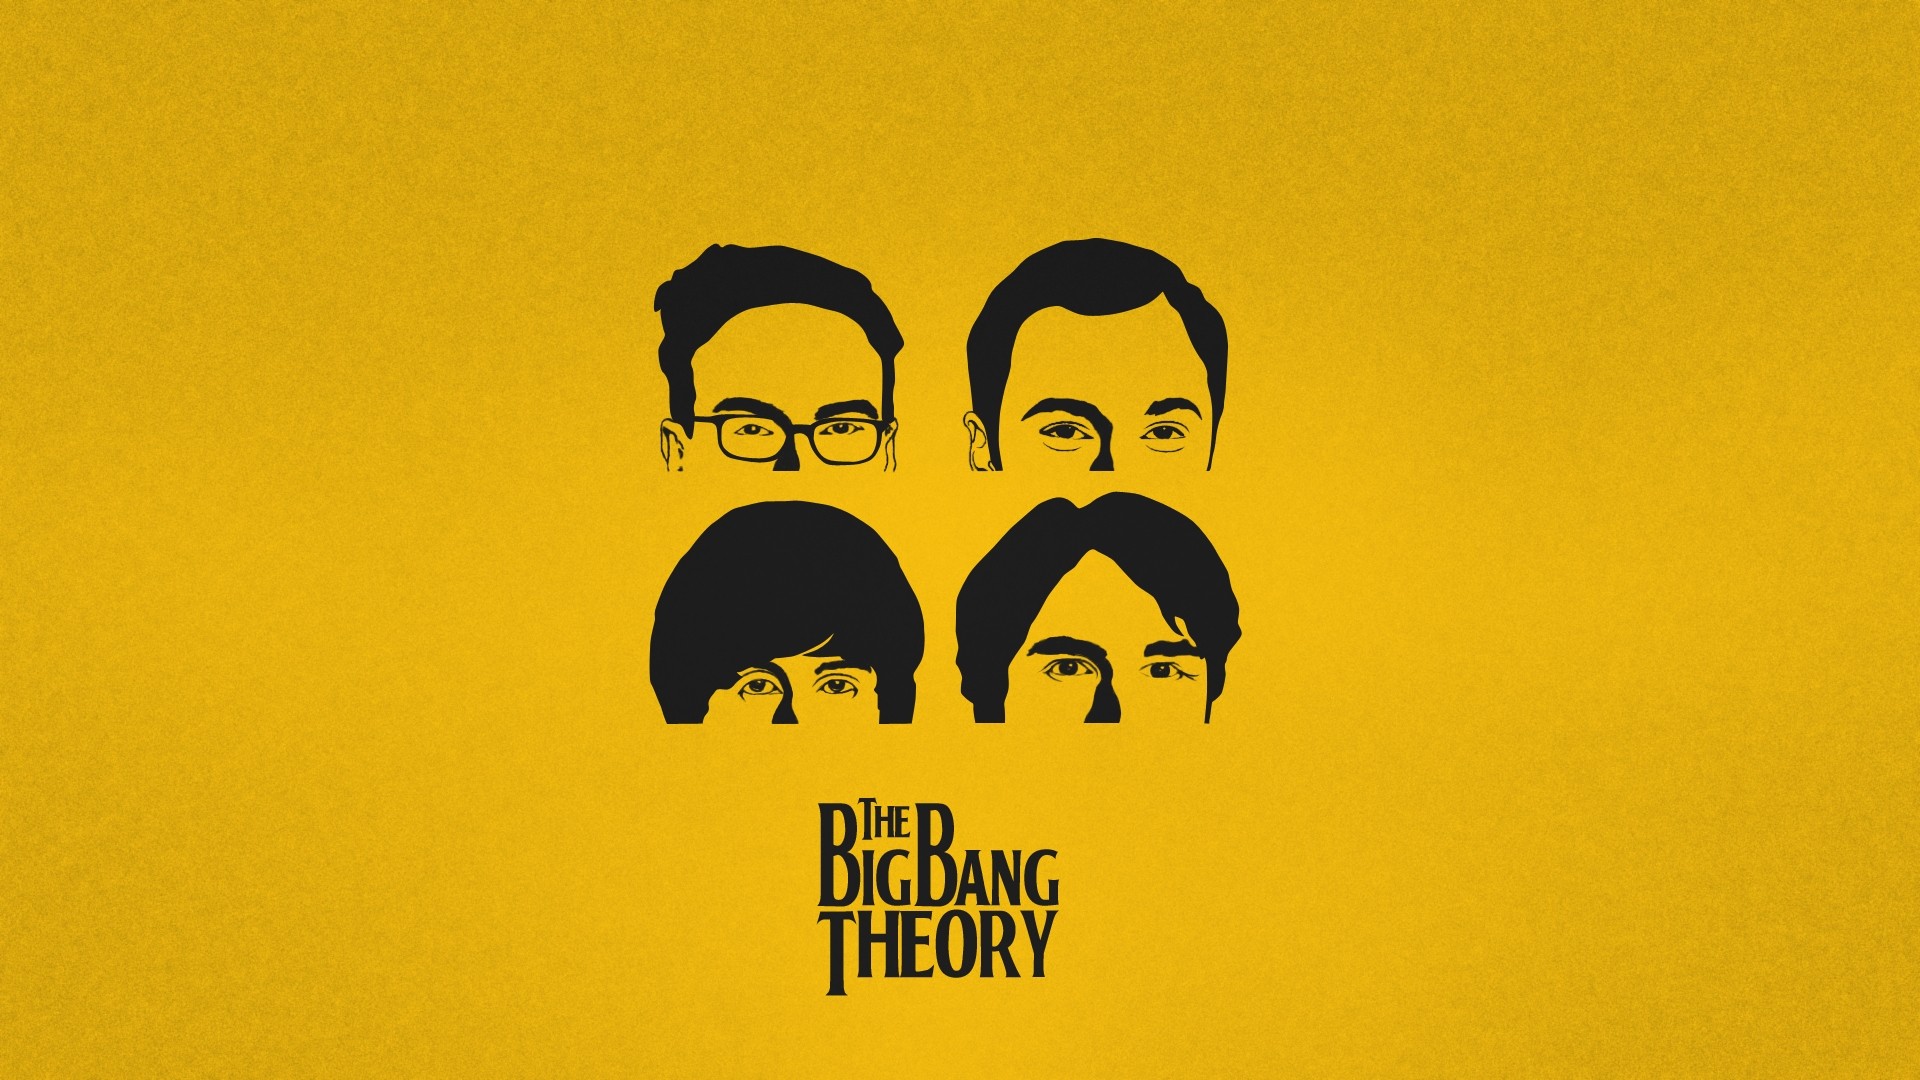 the-big-bang-theory-the-big-bang-theory-wallpaper-39186045-fanpop